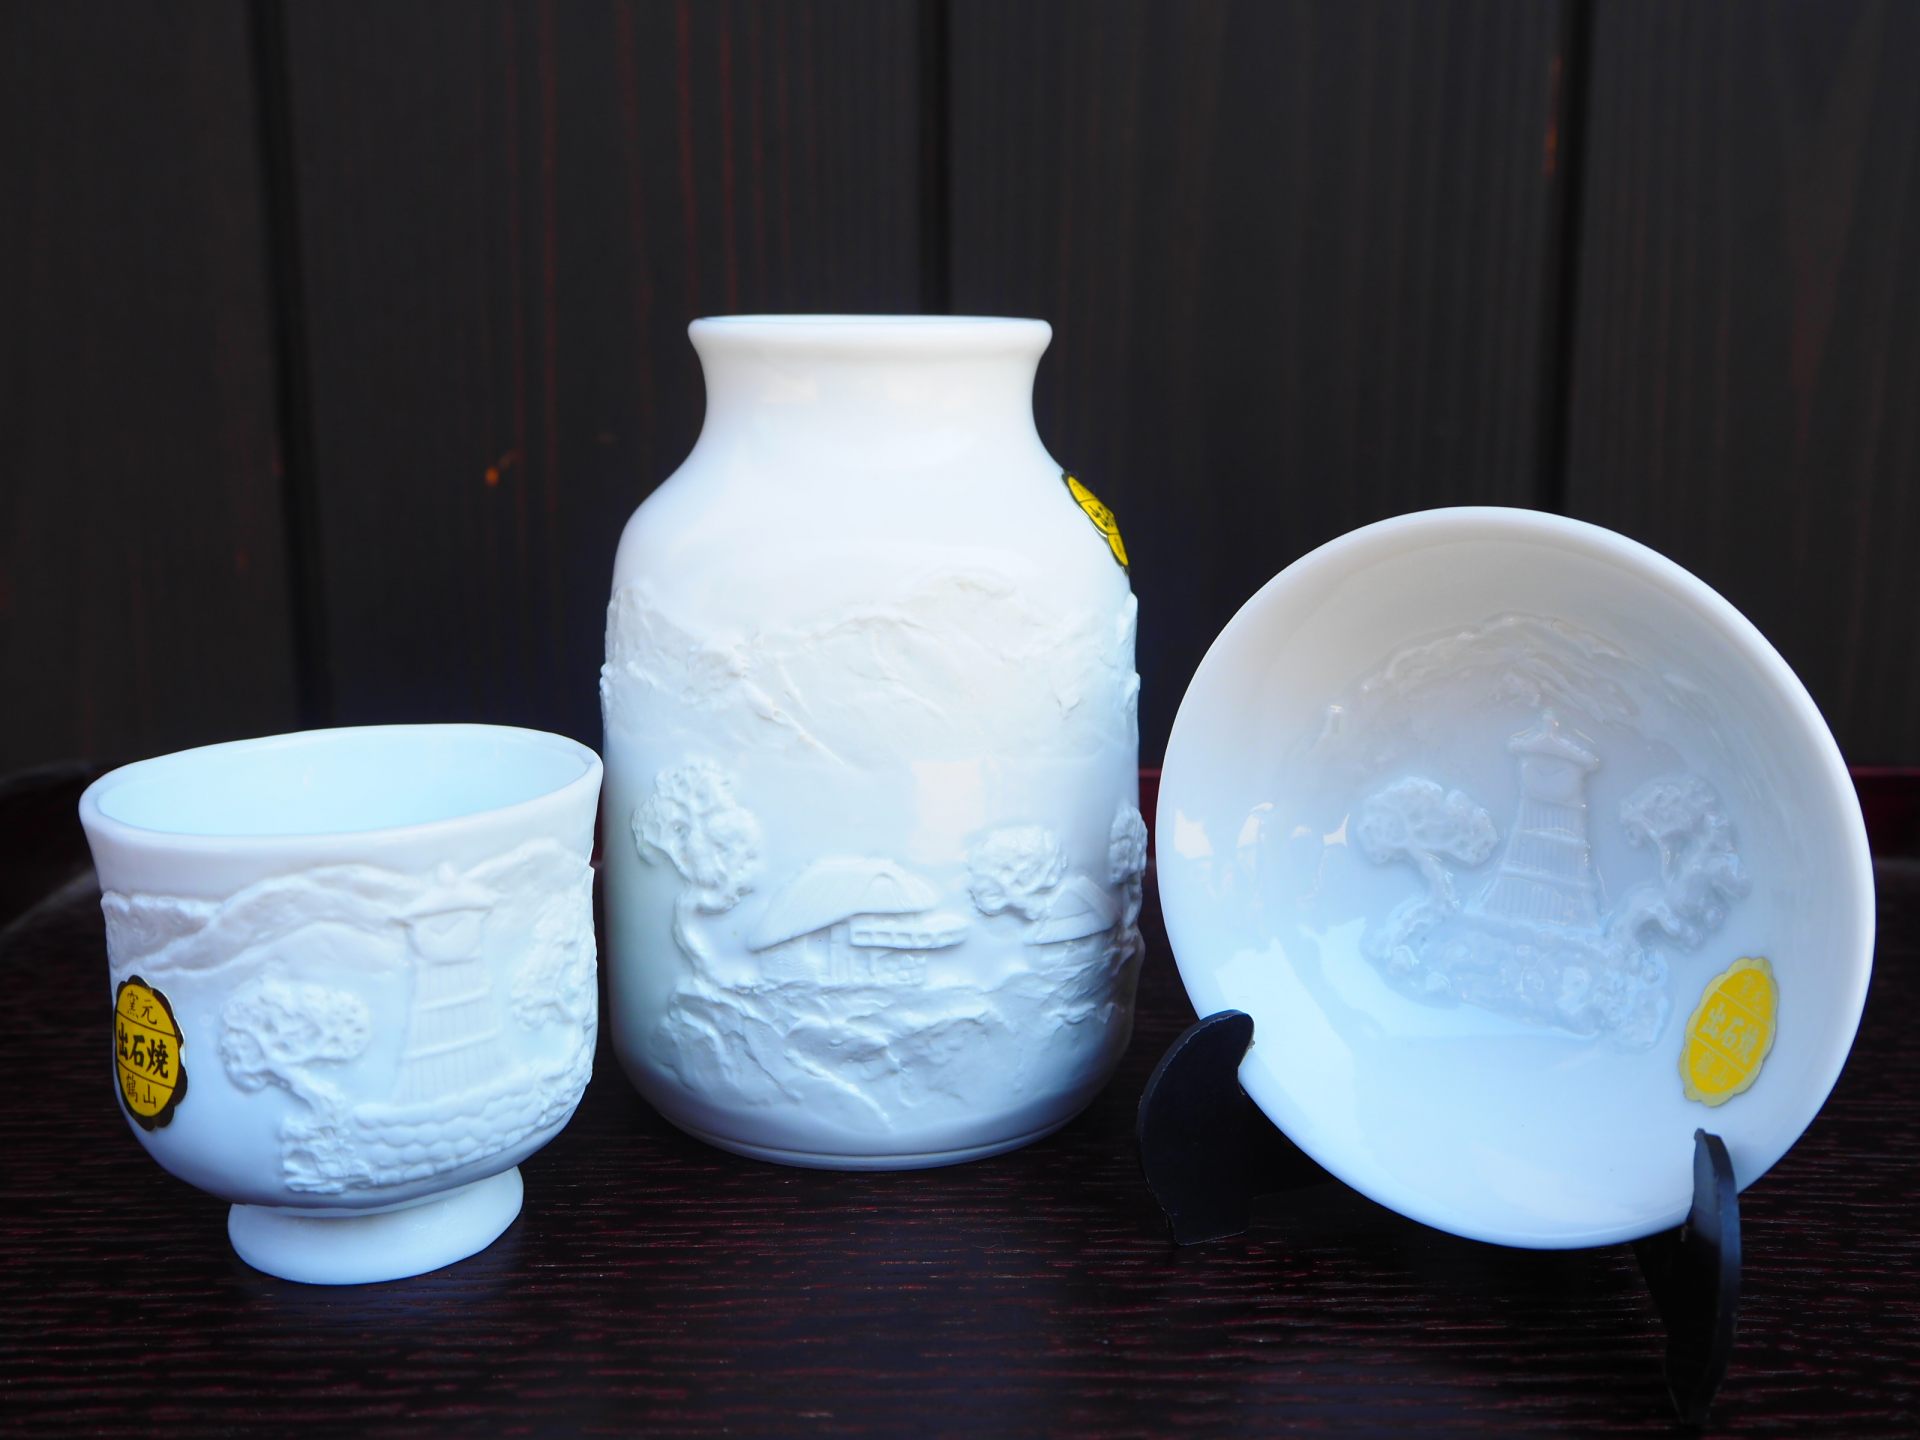 出石烧是一种很受欢迎的纪念品，它是一种罕见的白色陶器，表面如丝般光滑，呈白色。